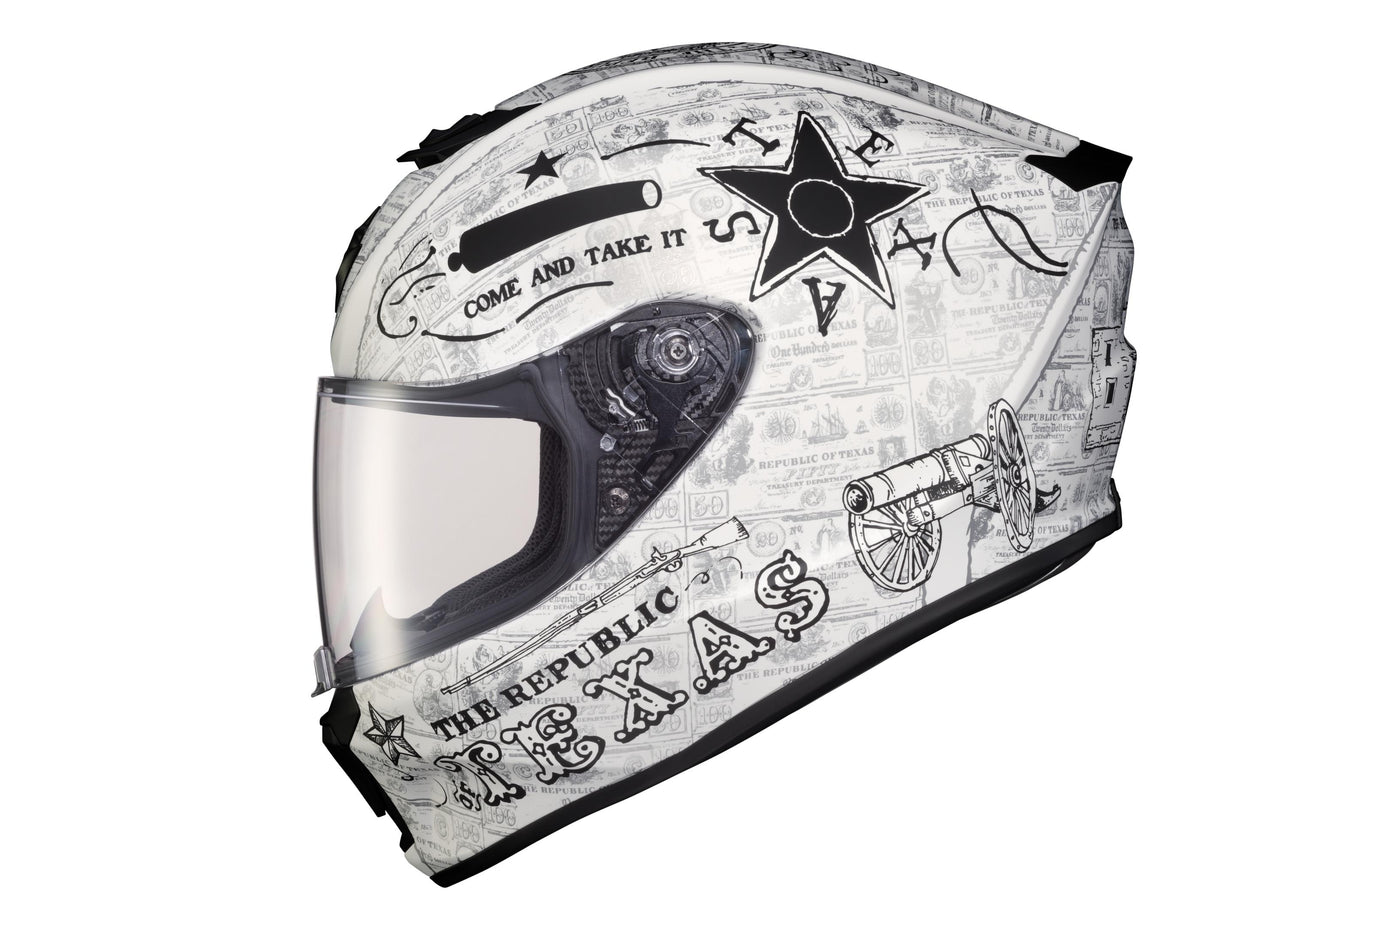 Exo-r420 Full Face Helmet Lone Star Black/gold Xl